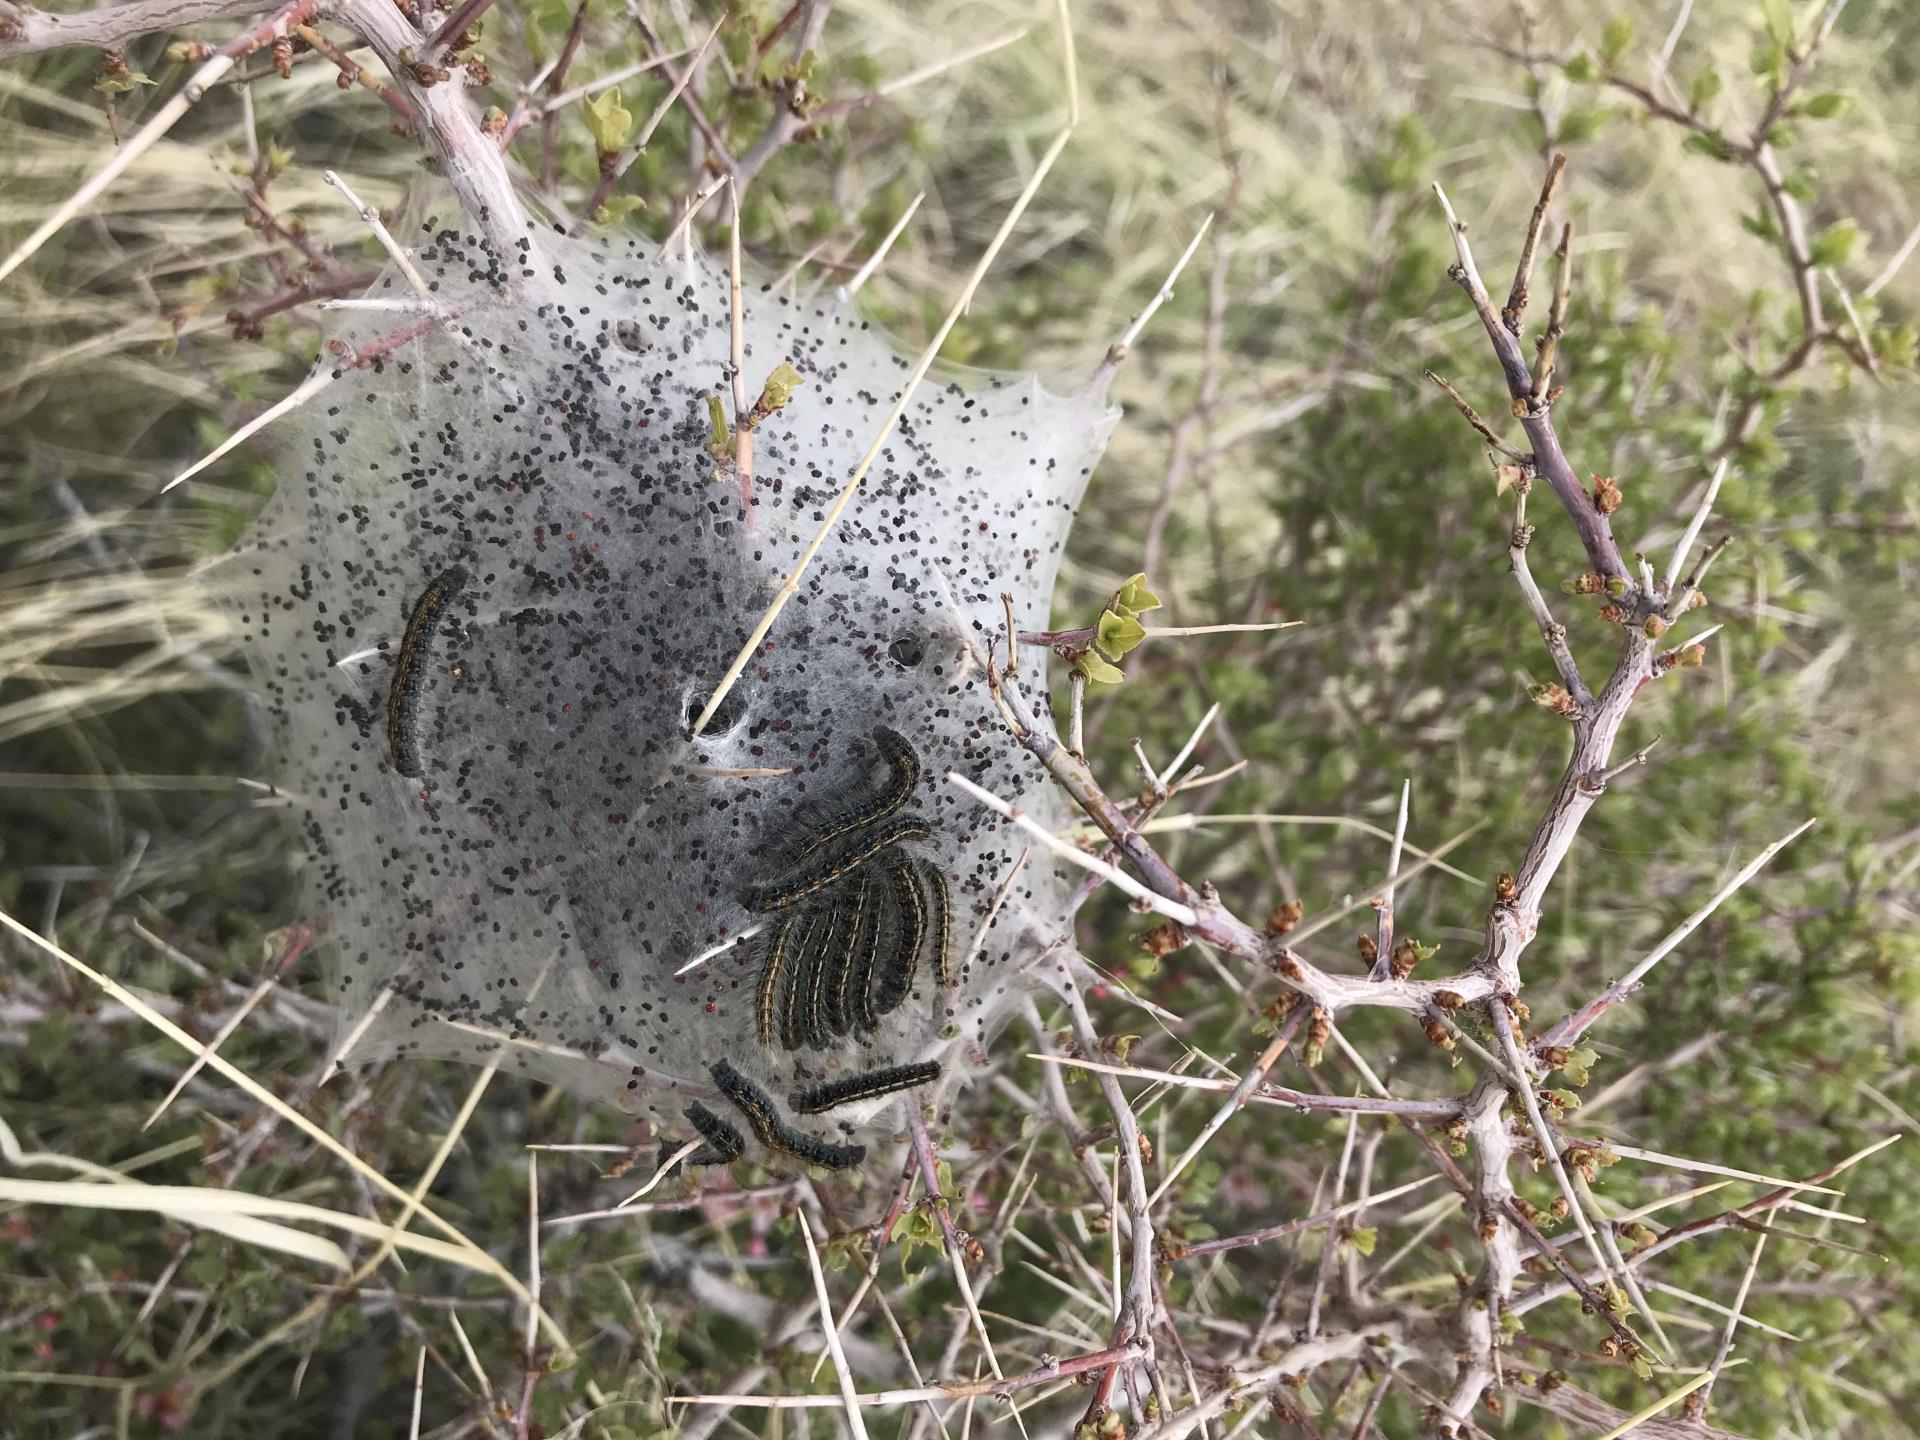 帐篷毛虫在沙漠桃树上筑巢.